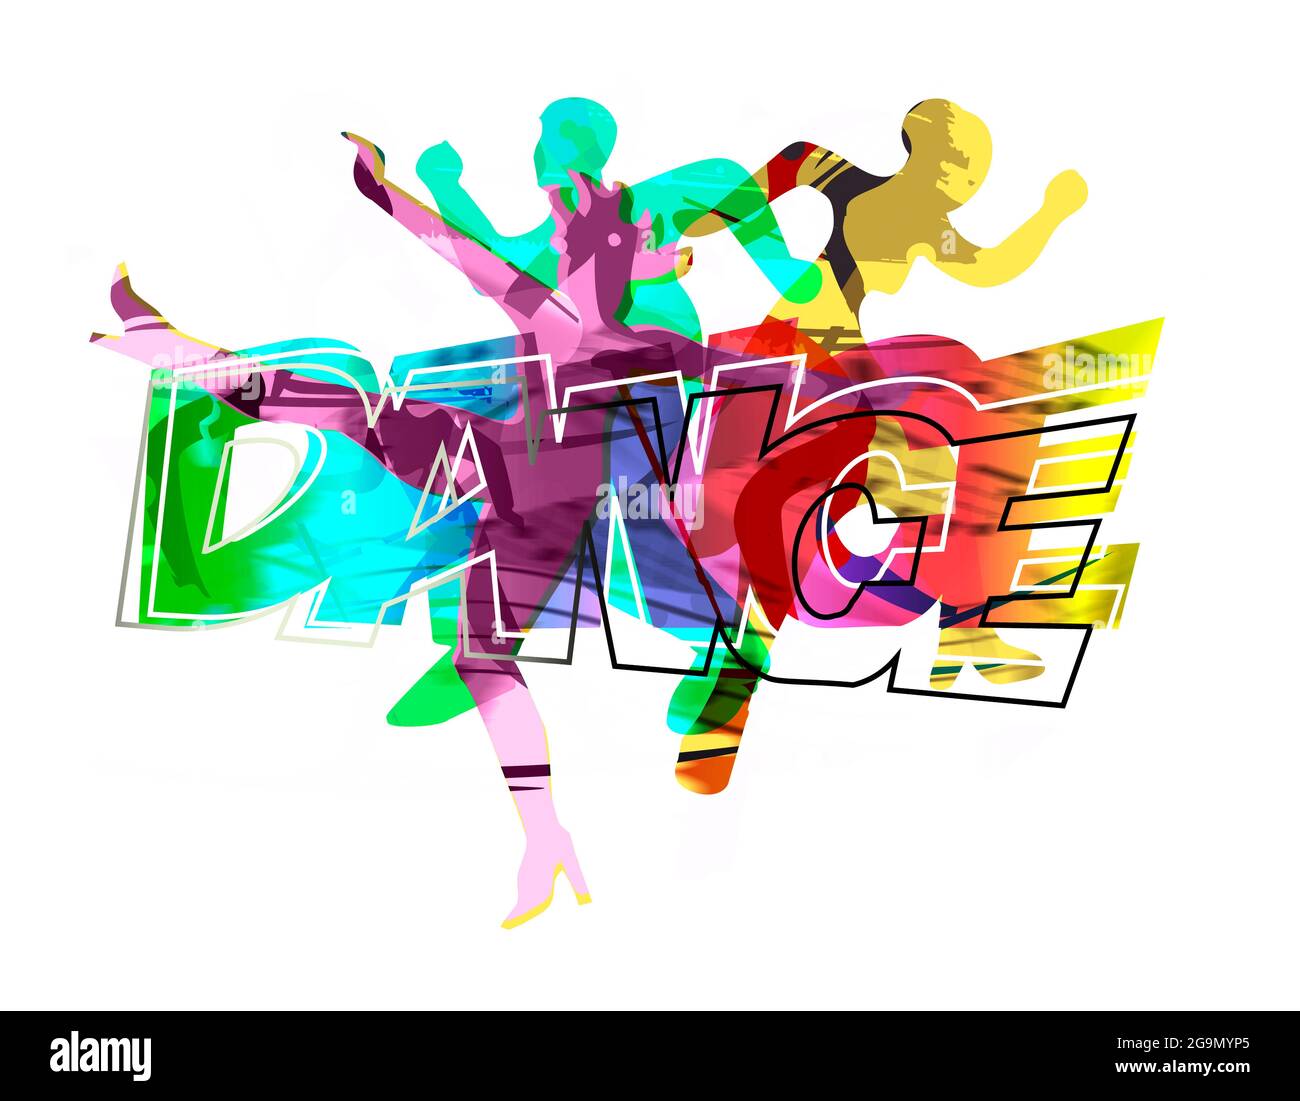 Danseurs, danse disco moderne. Illustration stylisée expressive de trois jeunes dansants et inscription DE DANSE. Banque D'Images